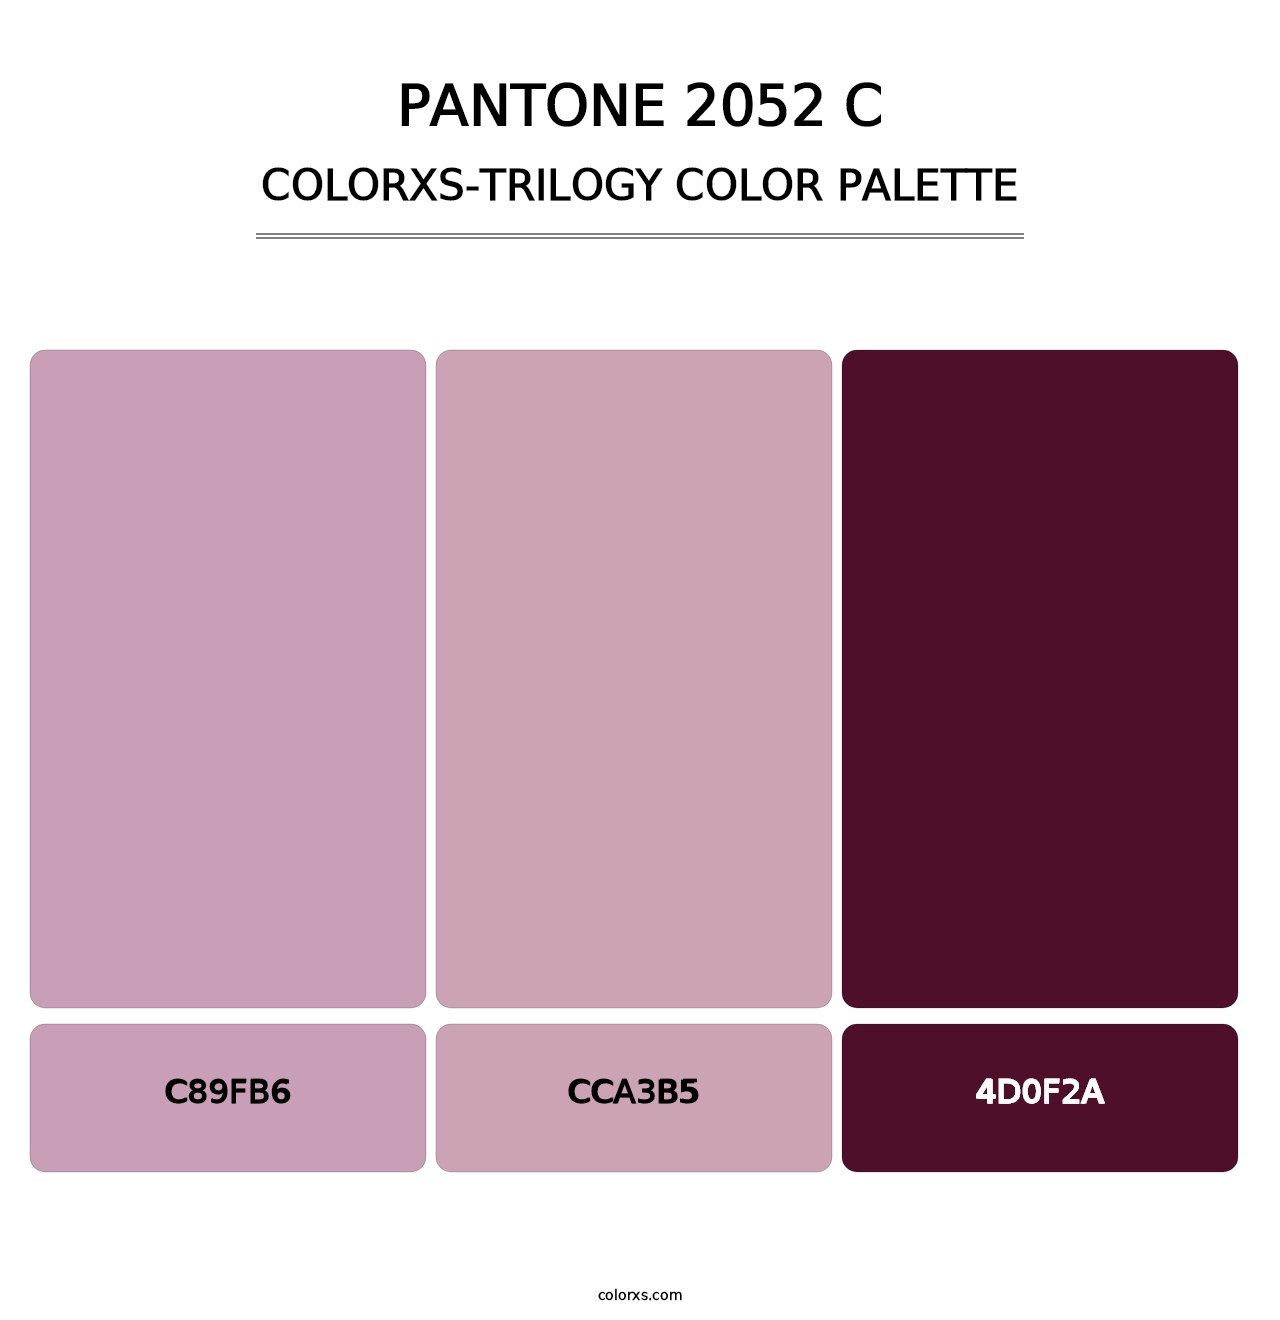 PANTONE 2052 C - Colorxs Trilogy Palette